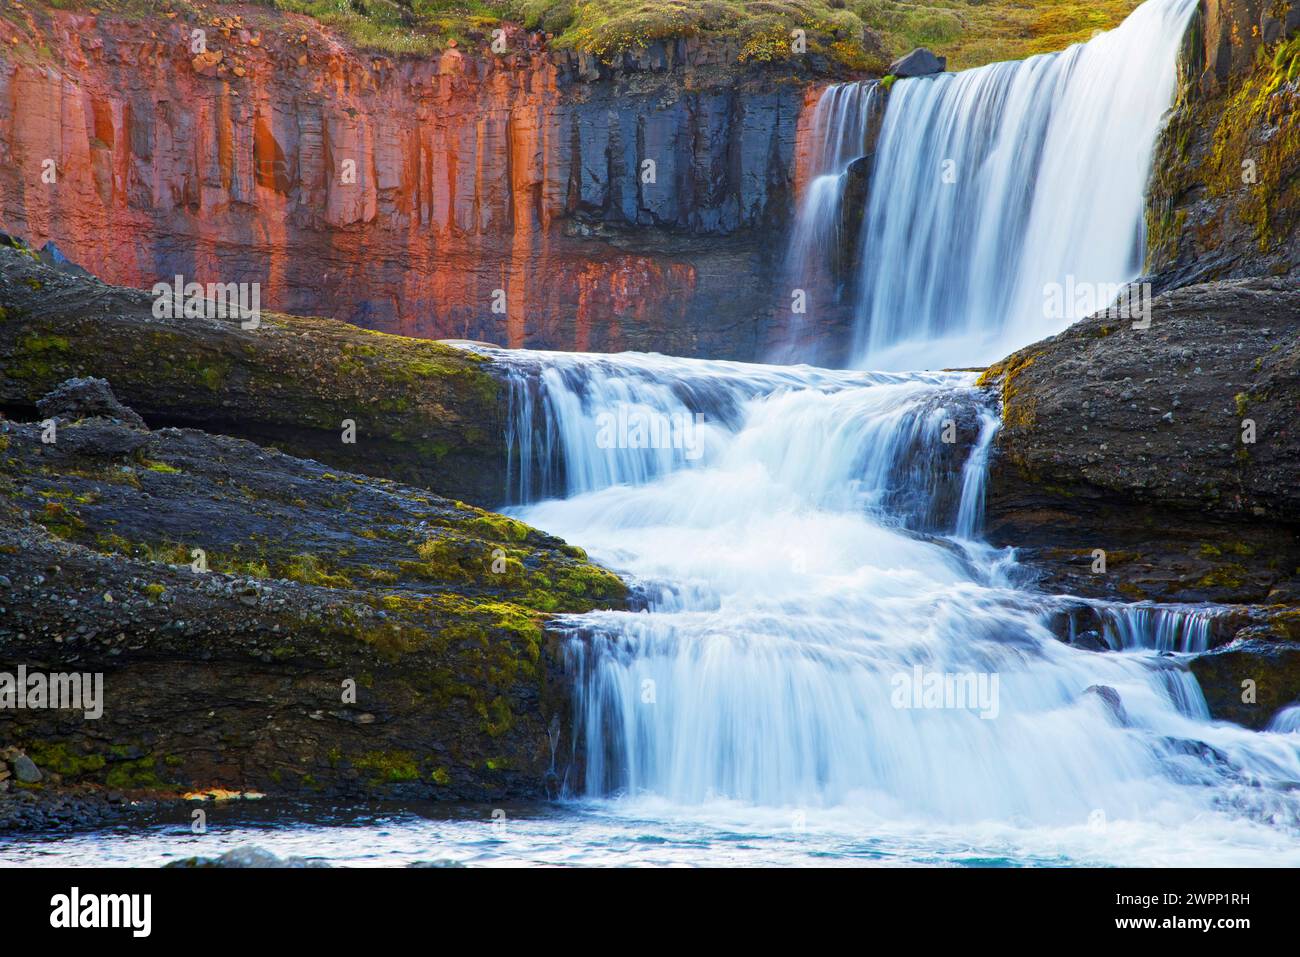 Slaidufoss (Veil Falls) fällt über Basaltsäulen, die durch Eisenoxid rot gefärbt sind, im kleinen Fluss Laugara bei Laugarfell nahe Mount Snaefell im Nordosten Islands. Stockfoto